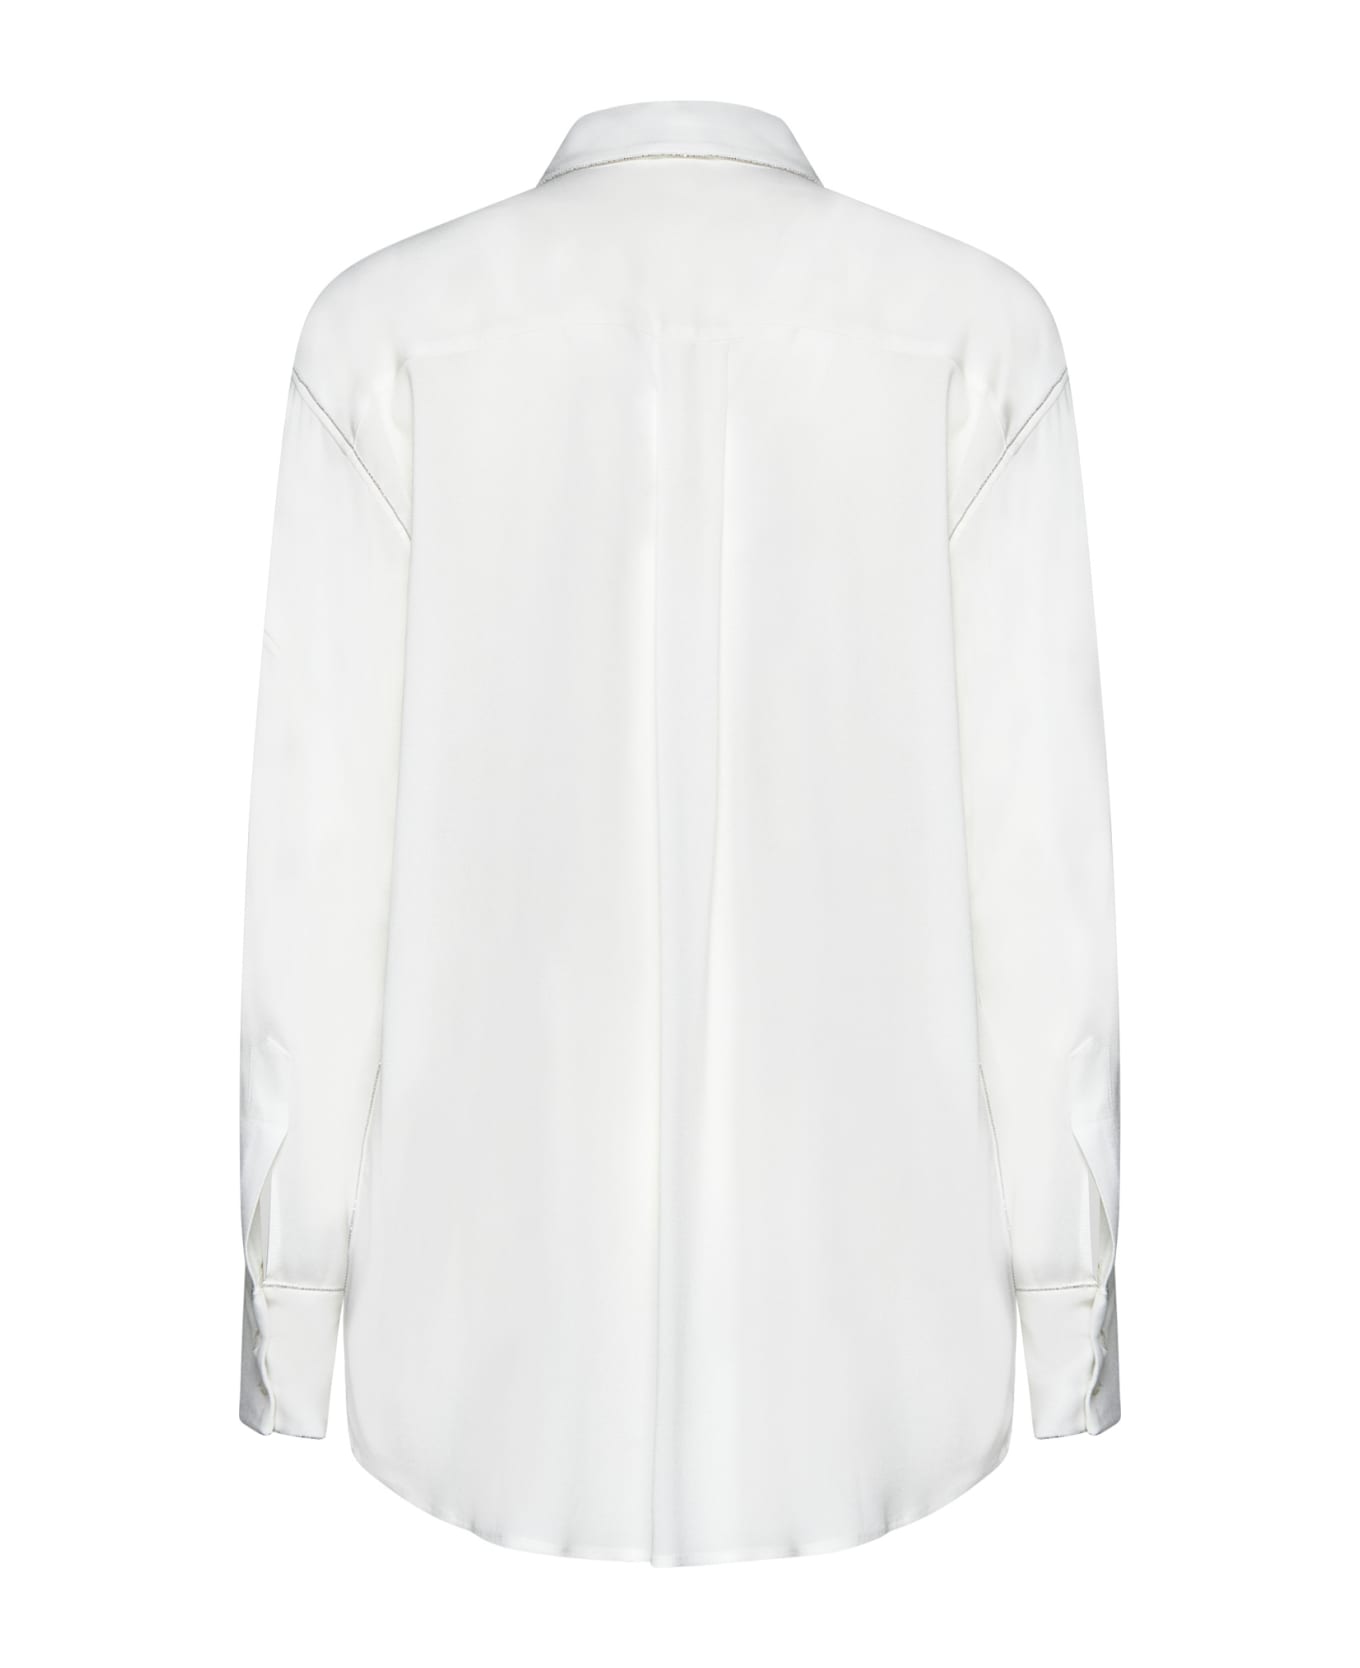 Fabiana Filippi Shirt - White シャツ